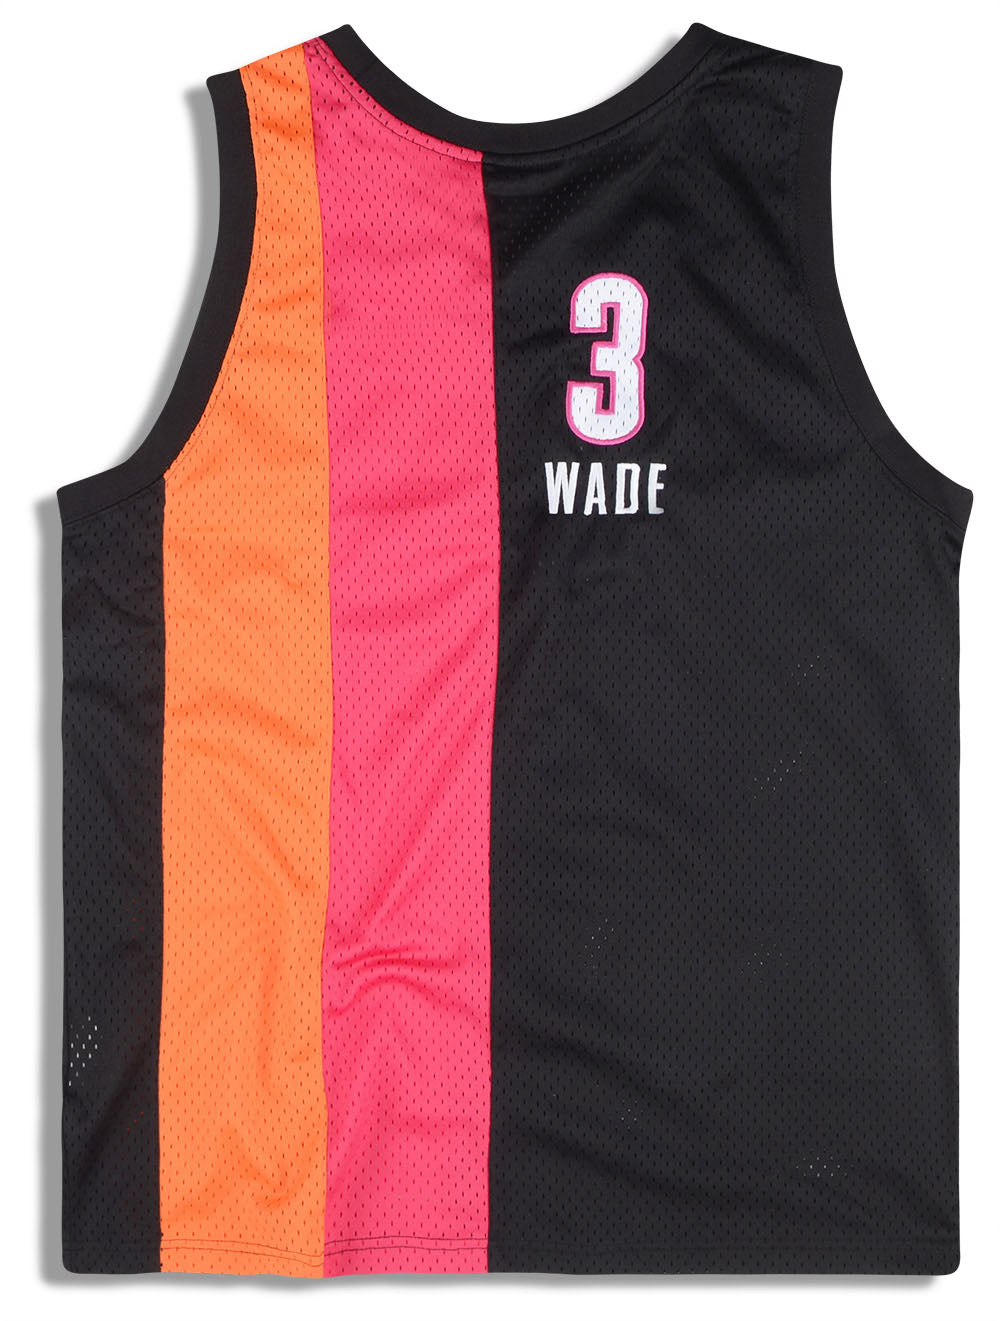 NBA Swingman Jersey Miami Heat Alternate 2005-06 Dwyane Wade #3